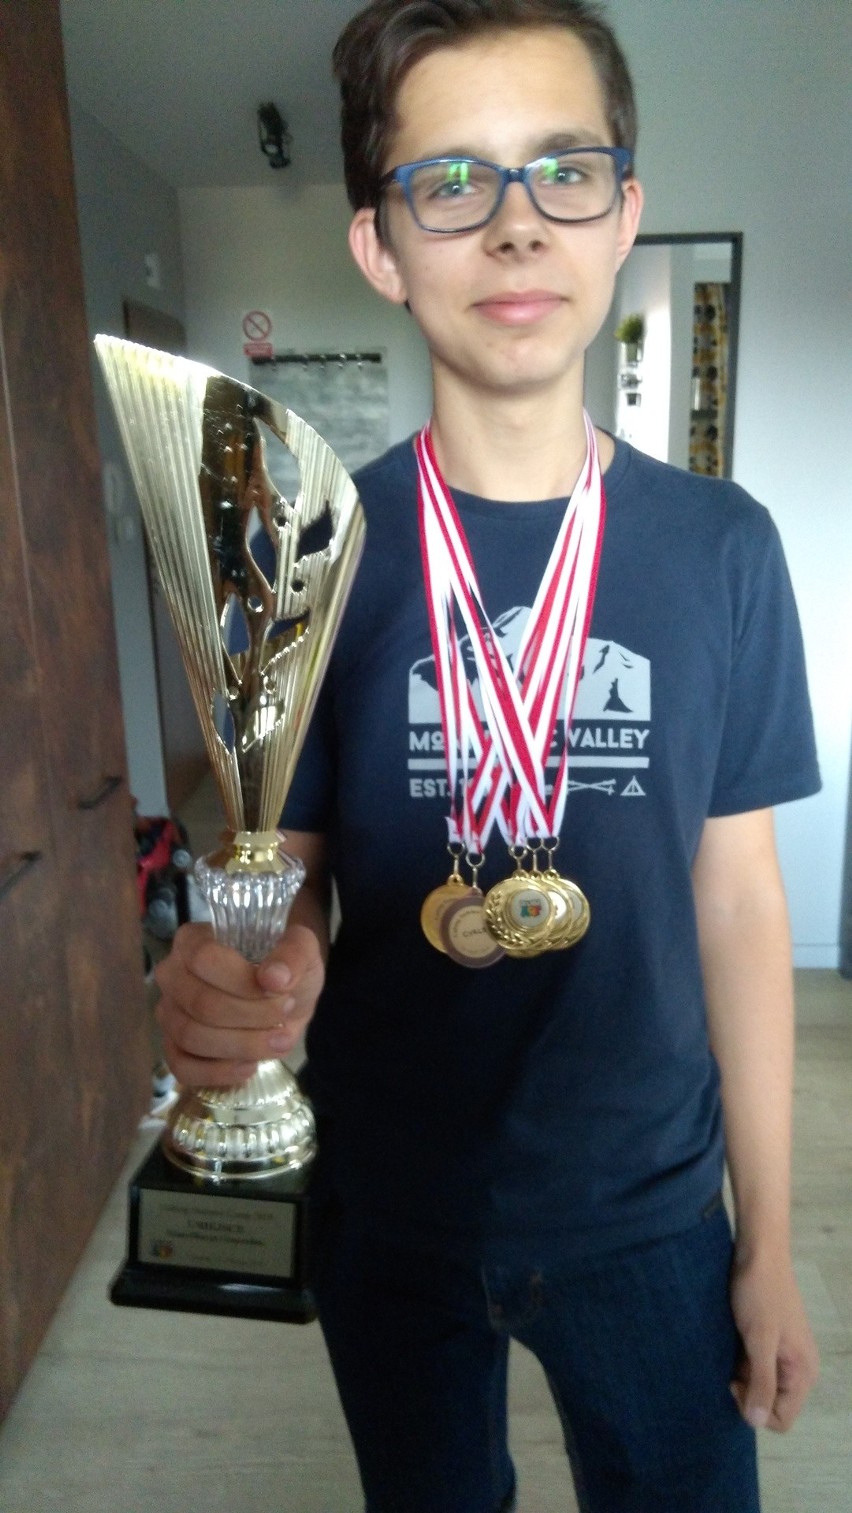 Szymon Brzana z Lasowic Wielkich startuje w Mistrzostwach Polski Juniorów w Speedcubingu. Ułożenie kostki zajmuje mu do 10 sekund